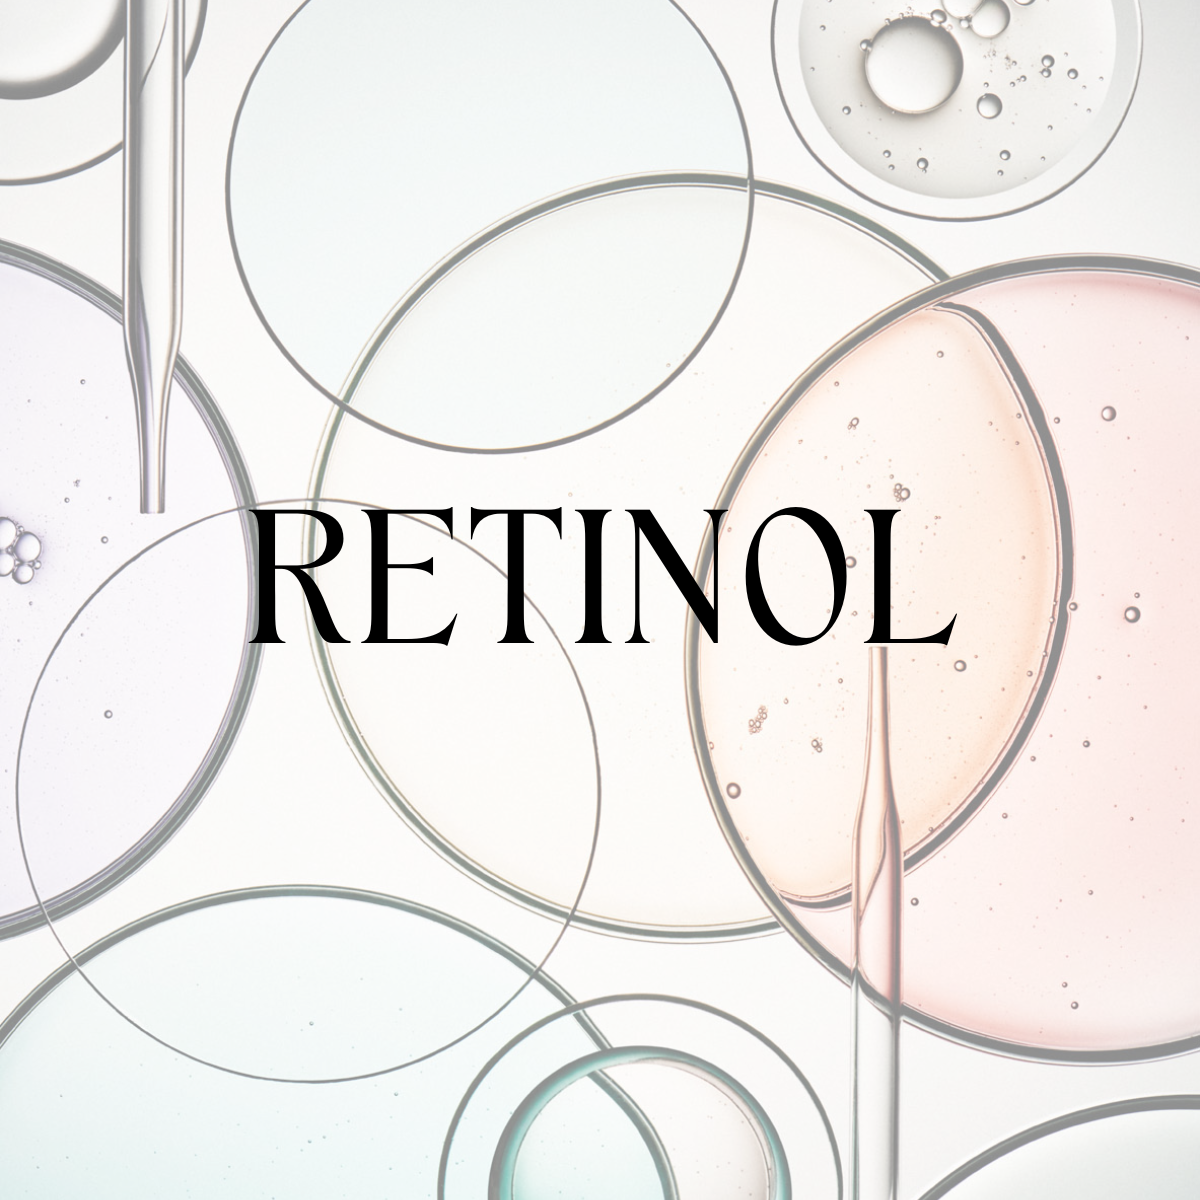 Categoría de productos retinol